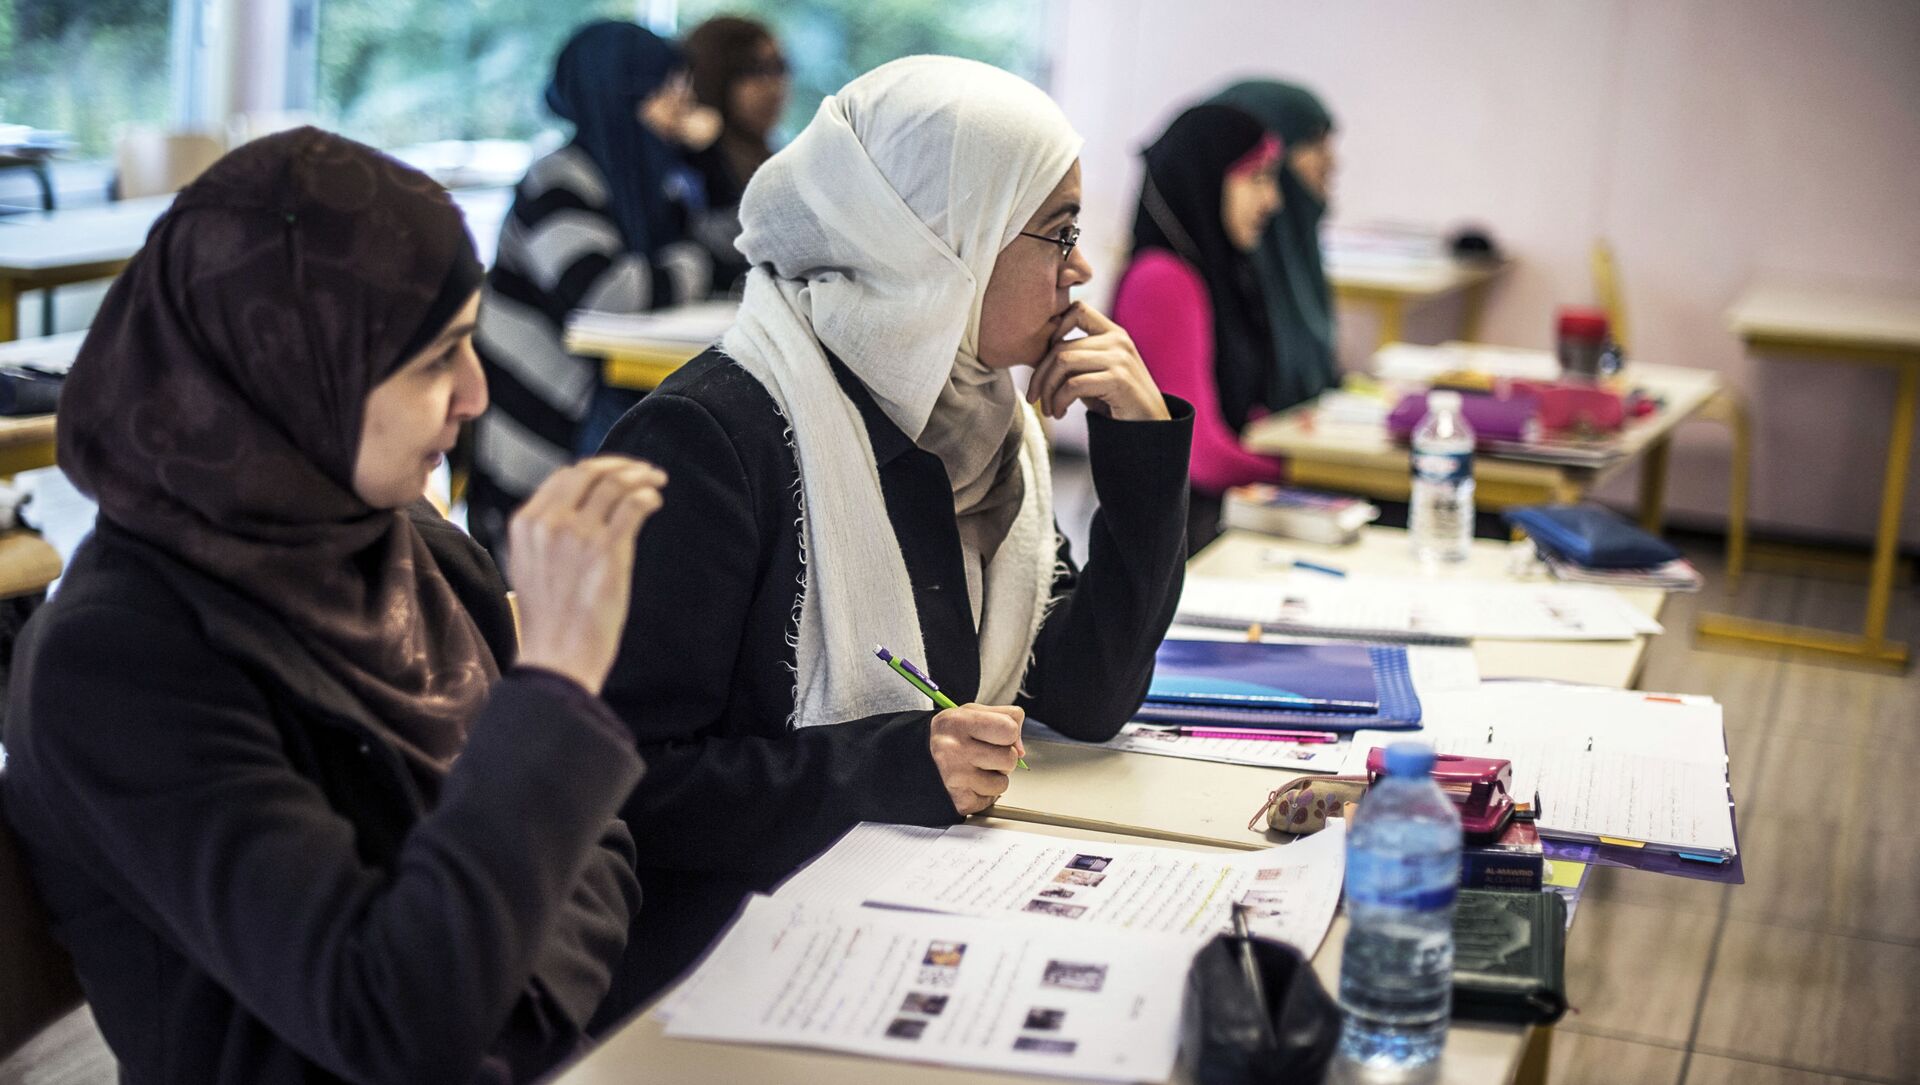 Les élèves suivent un cours d'arabe dans une classe de l'Institut européen des sciences humaines (IESH)  - Sputnik Afrique, 1920, 03.03.2021